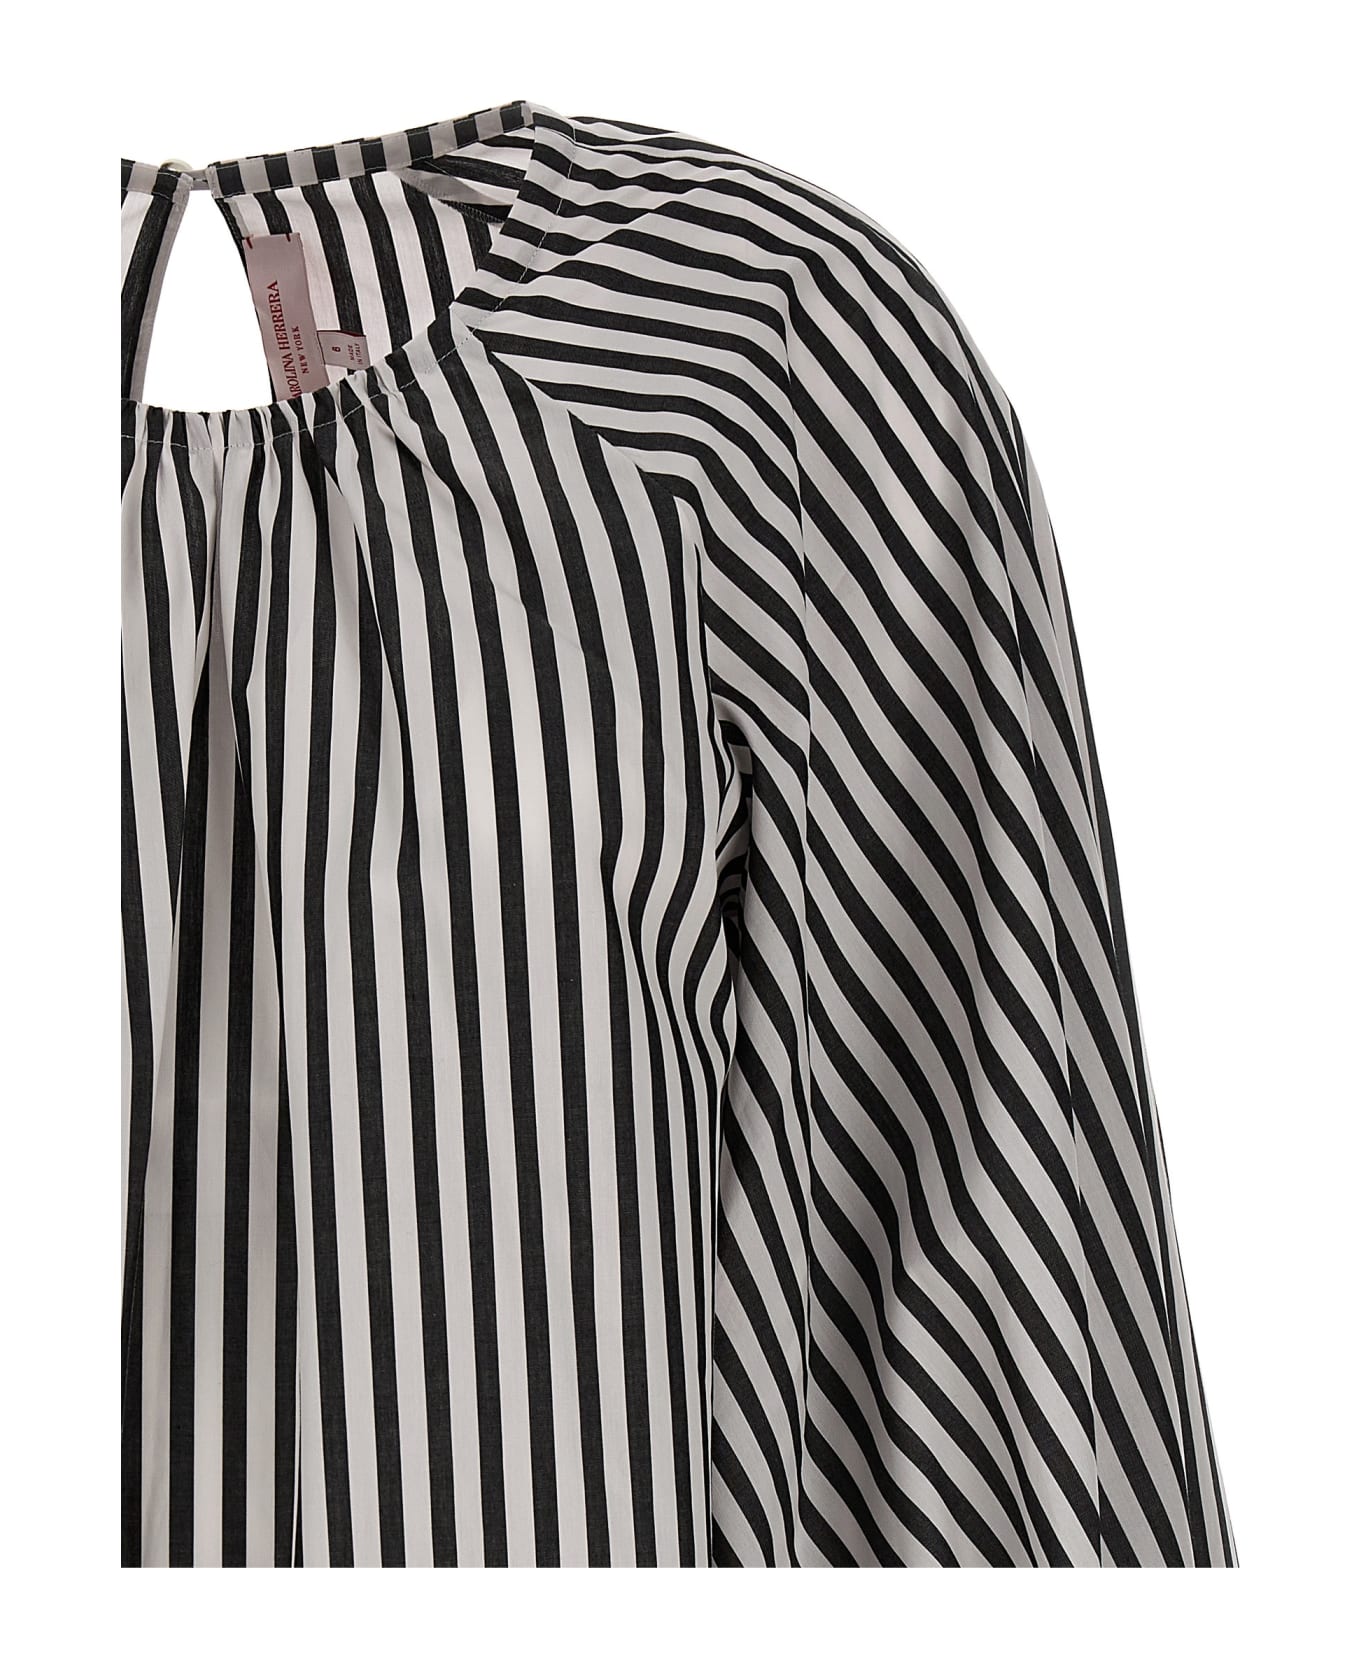 Carolina Herrera Striped Bloshirt - White/Black